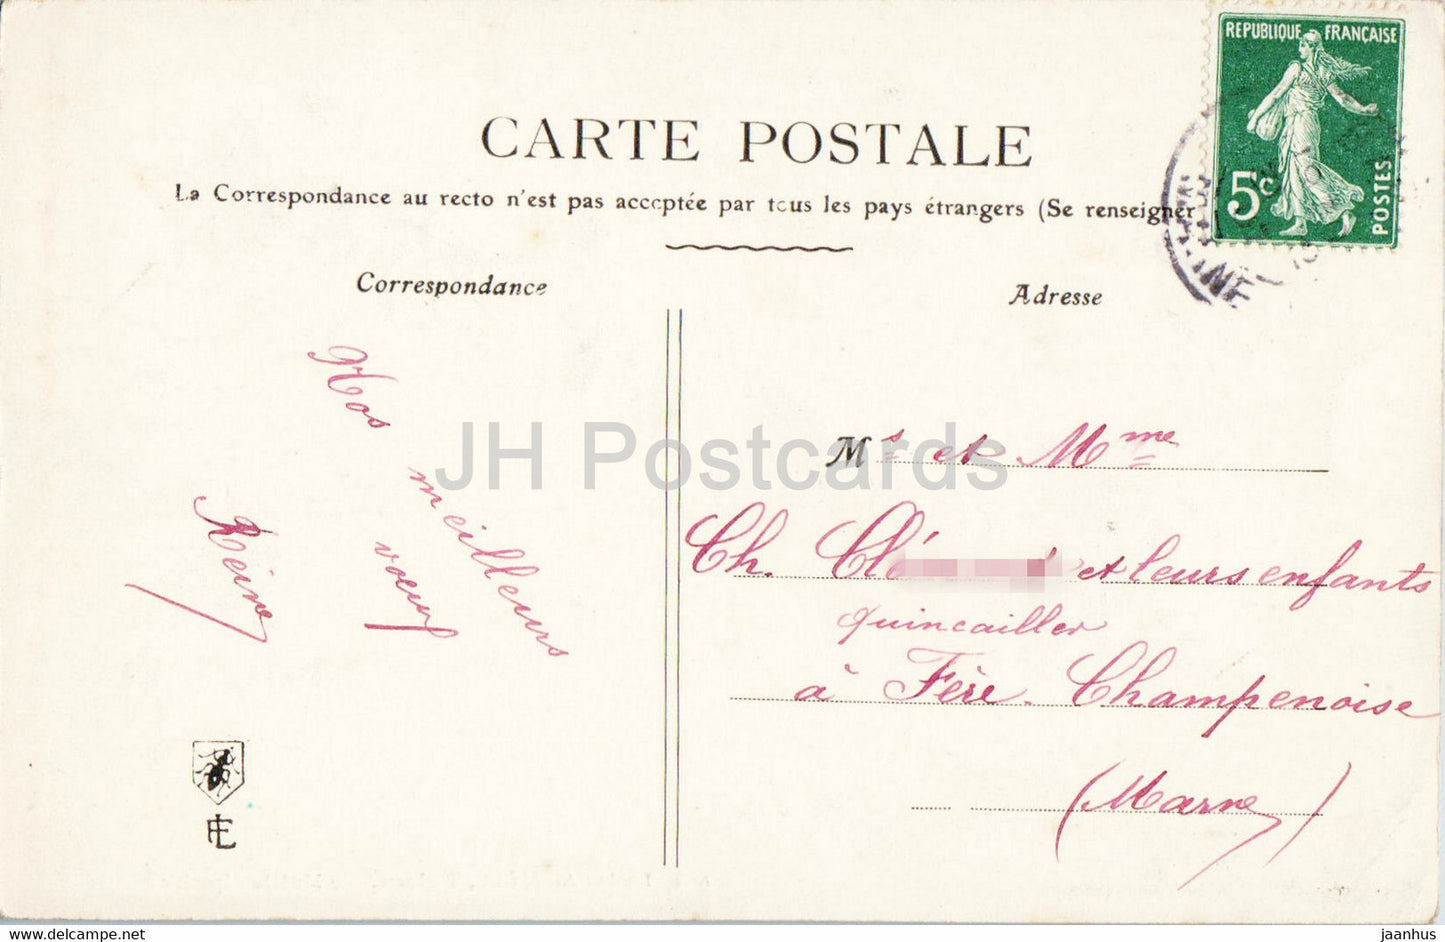 Carte de voeux anniversaire - Bonne Annee - illustration - 46 - carte postale ancienne - France - occasion